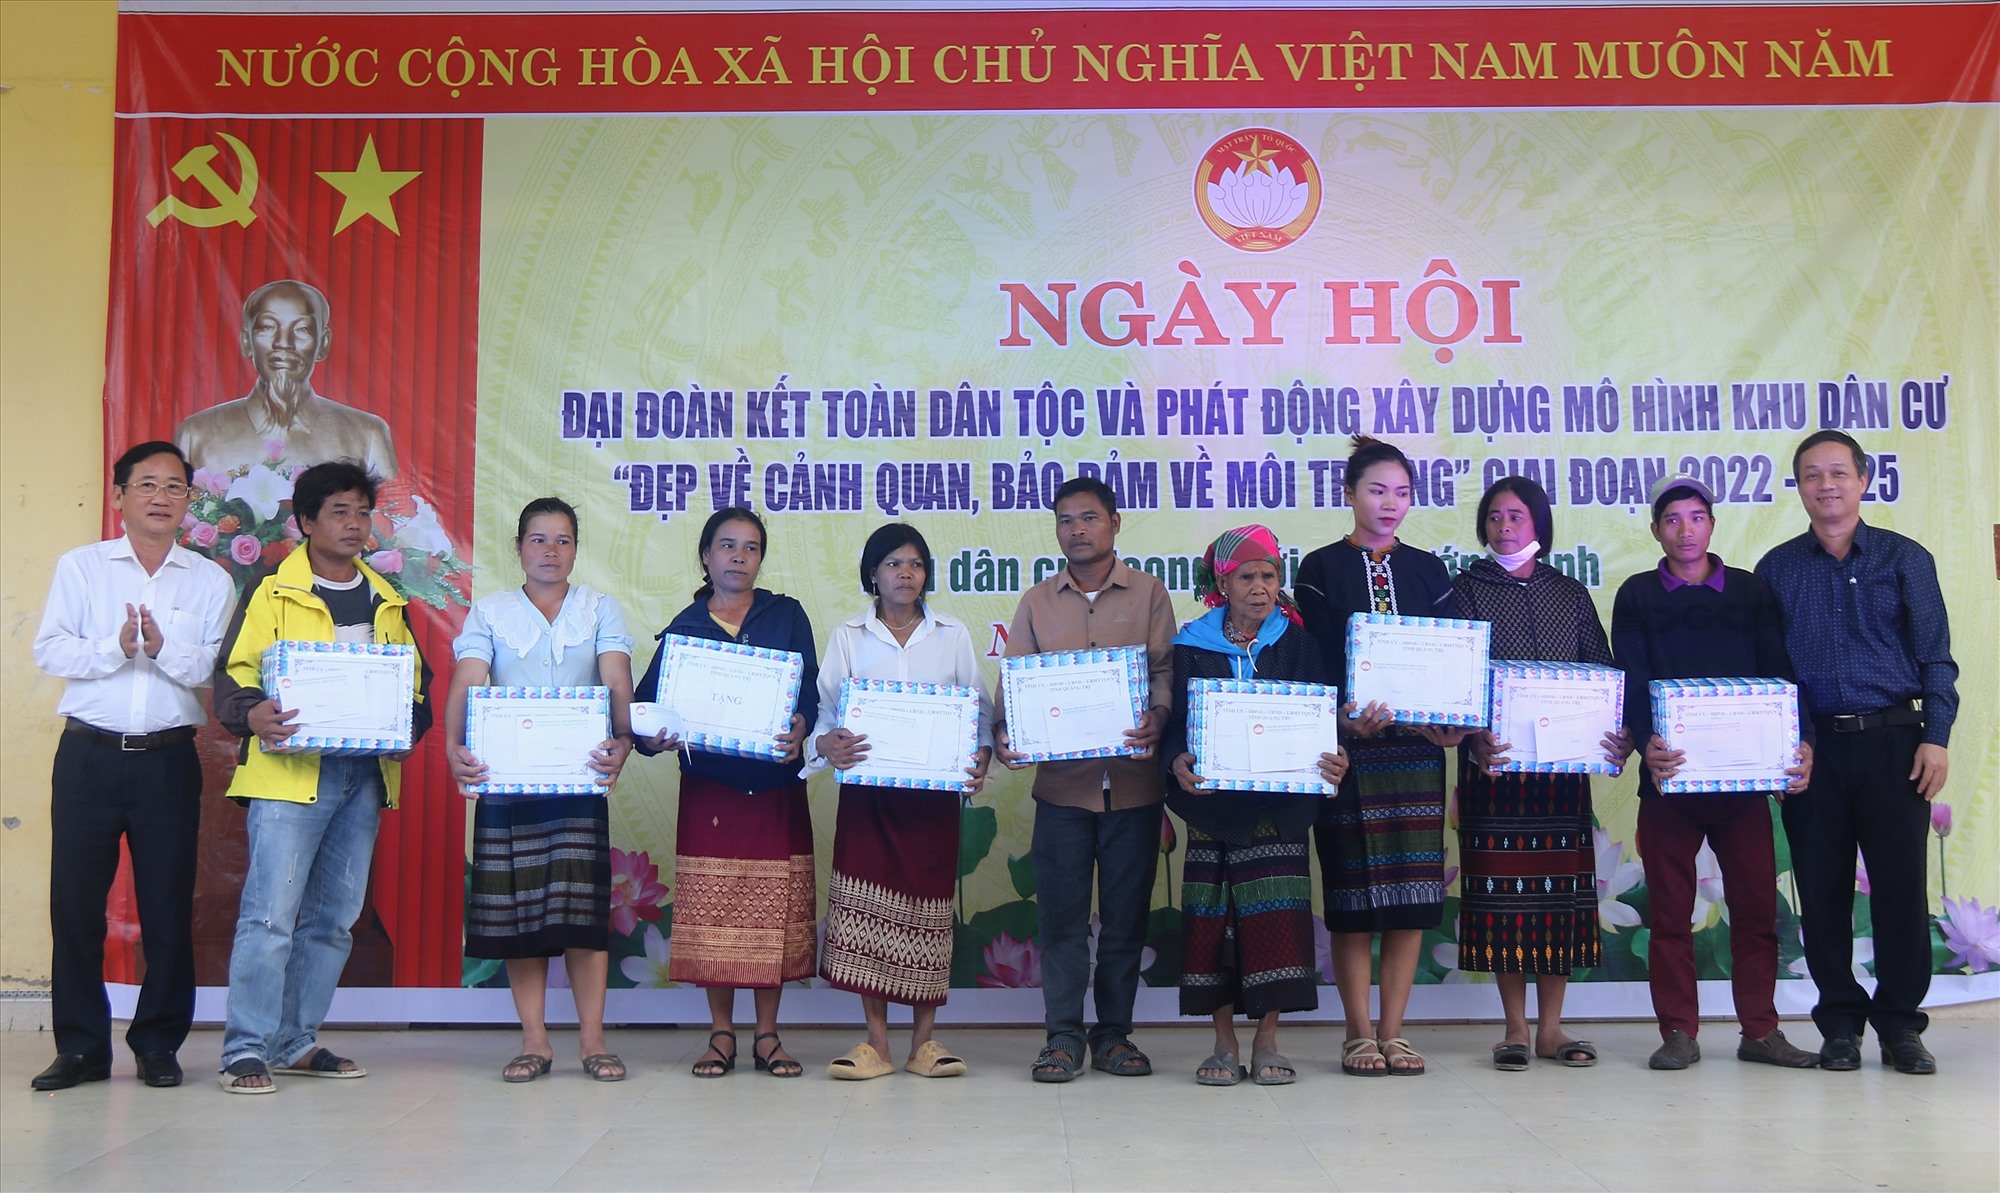 Trưởng Ban Tuyên giáo Tỉnh ủy Hồ Đại Nam và Phó Chủ tịch HĐND tỉnh Nguyễn Trần Huy trao tặng quà cho người dân khu dân cư Hoong Mới - Ảnh: N.B